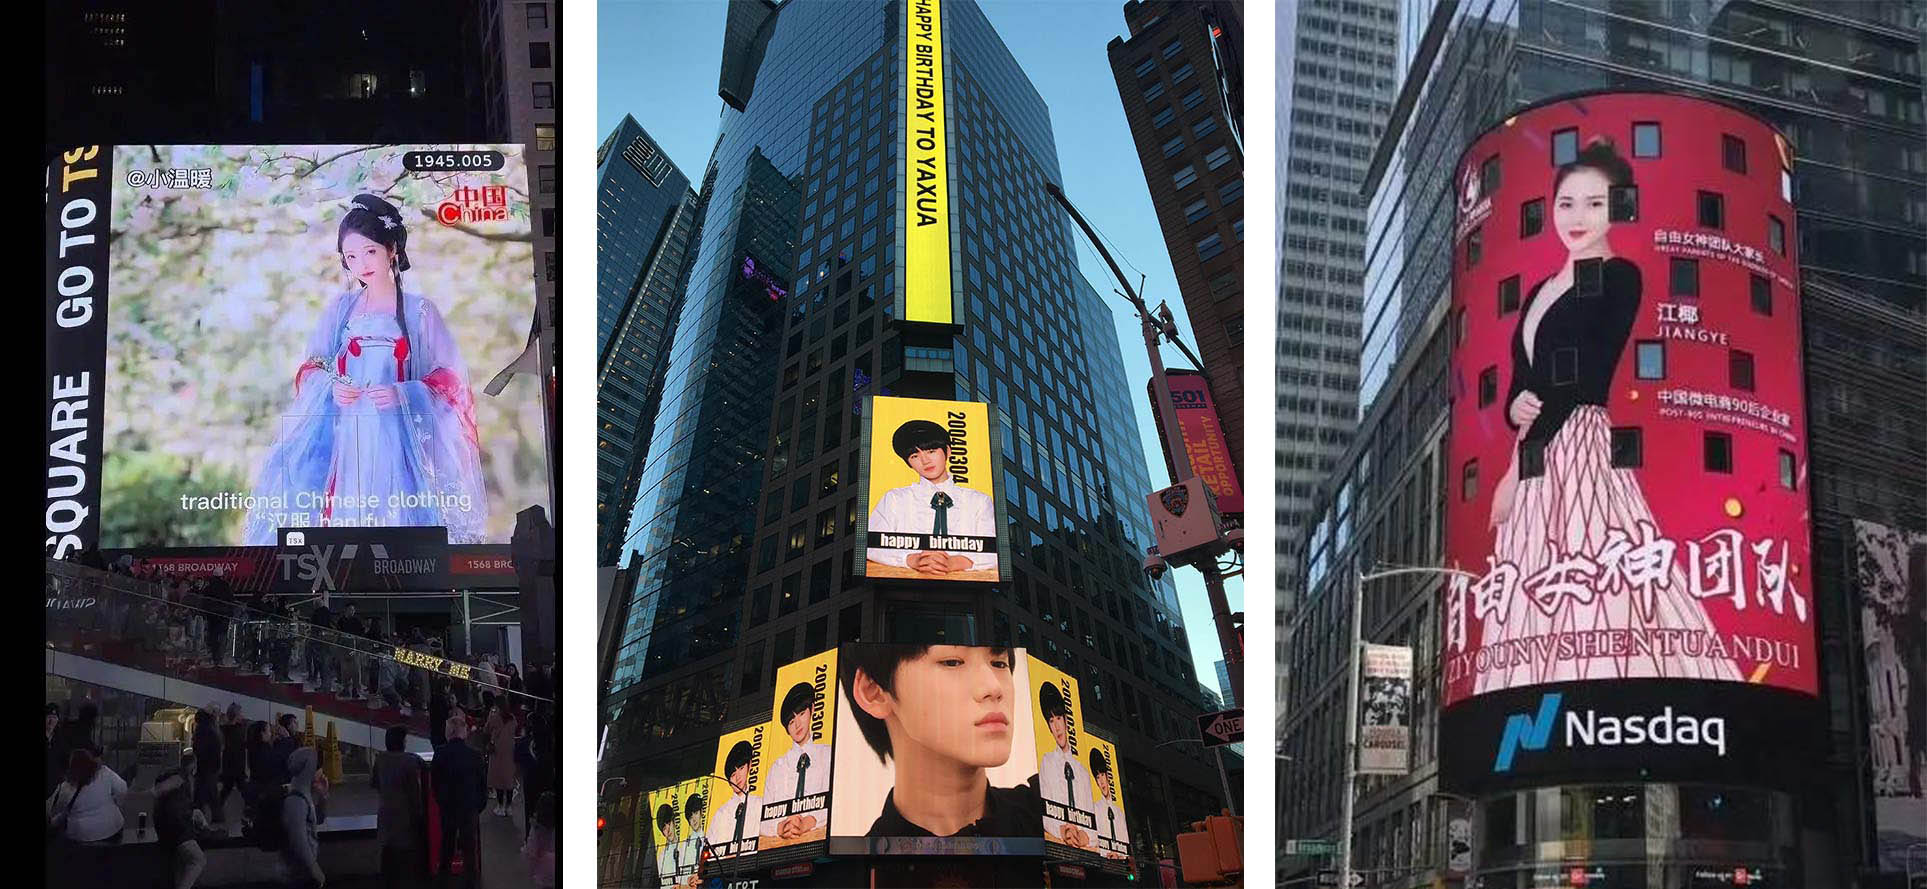 15秒40美元：美国纽约时代广场广告牌吸引了大量中国渴求刷存在感的人